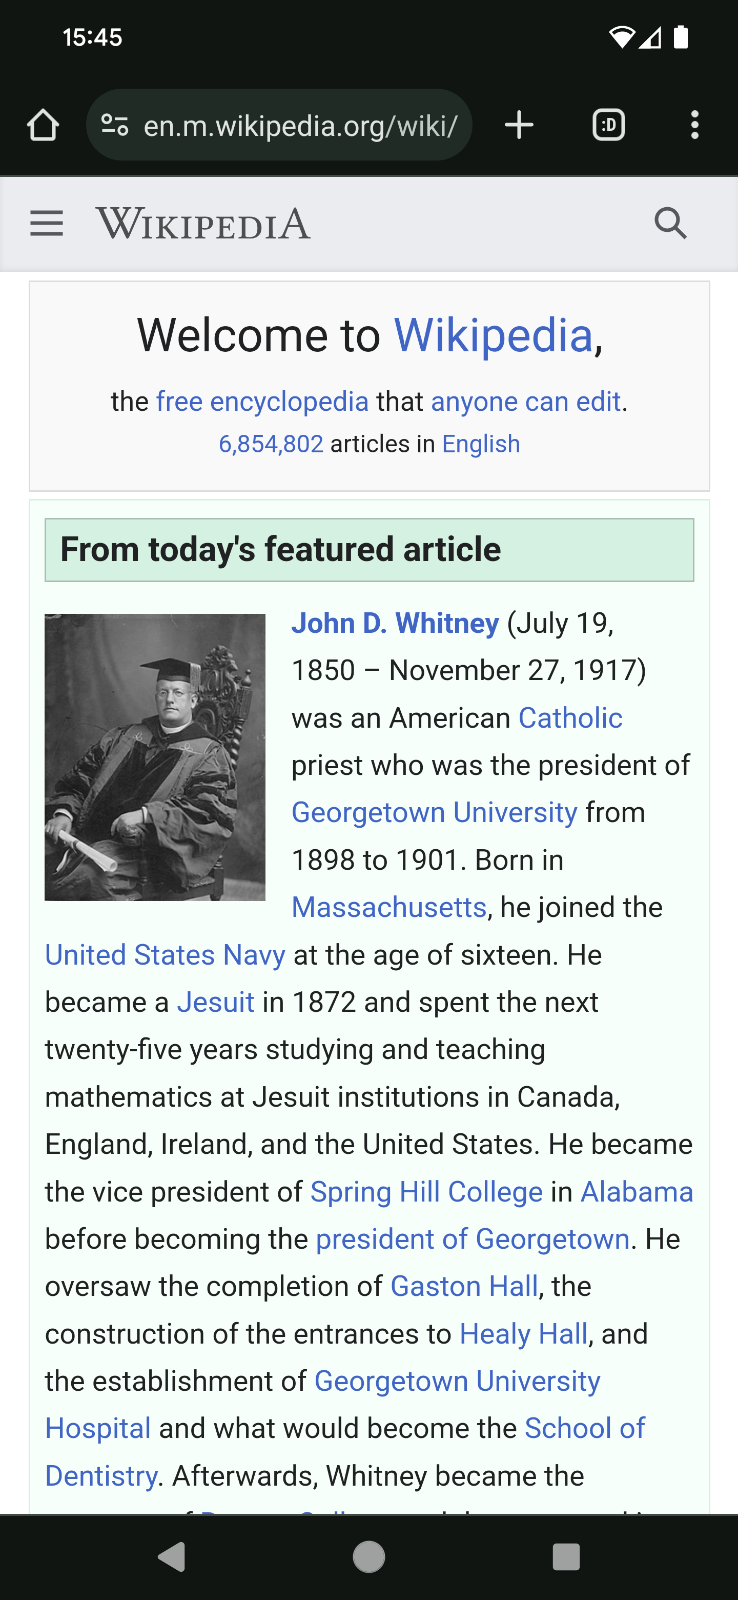 Trang web Wikipedia trên thiết bị di động.